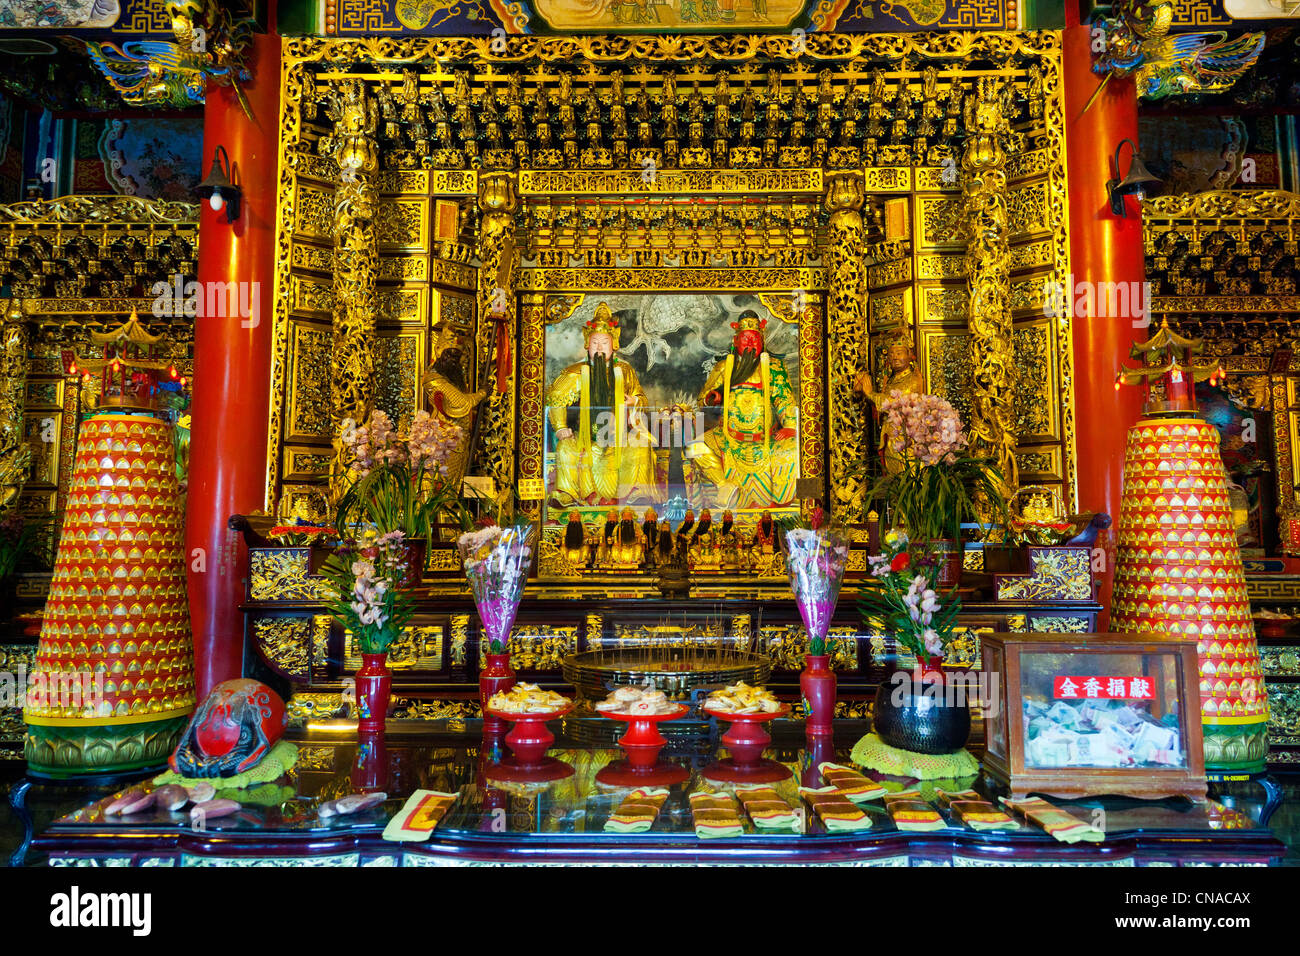 Wenwu Temple, Sun Moon Lake, Taiwan. JMH5861 Stock Photo